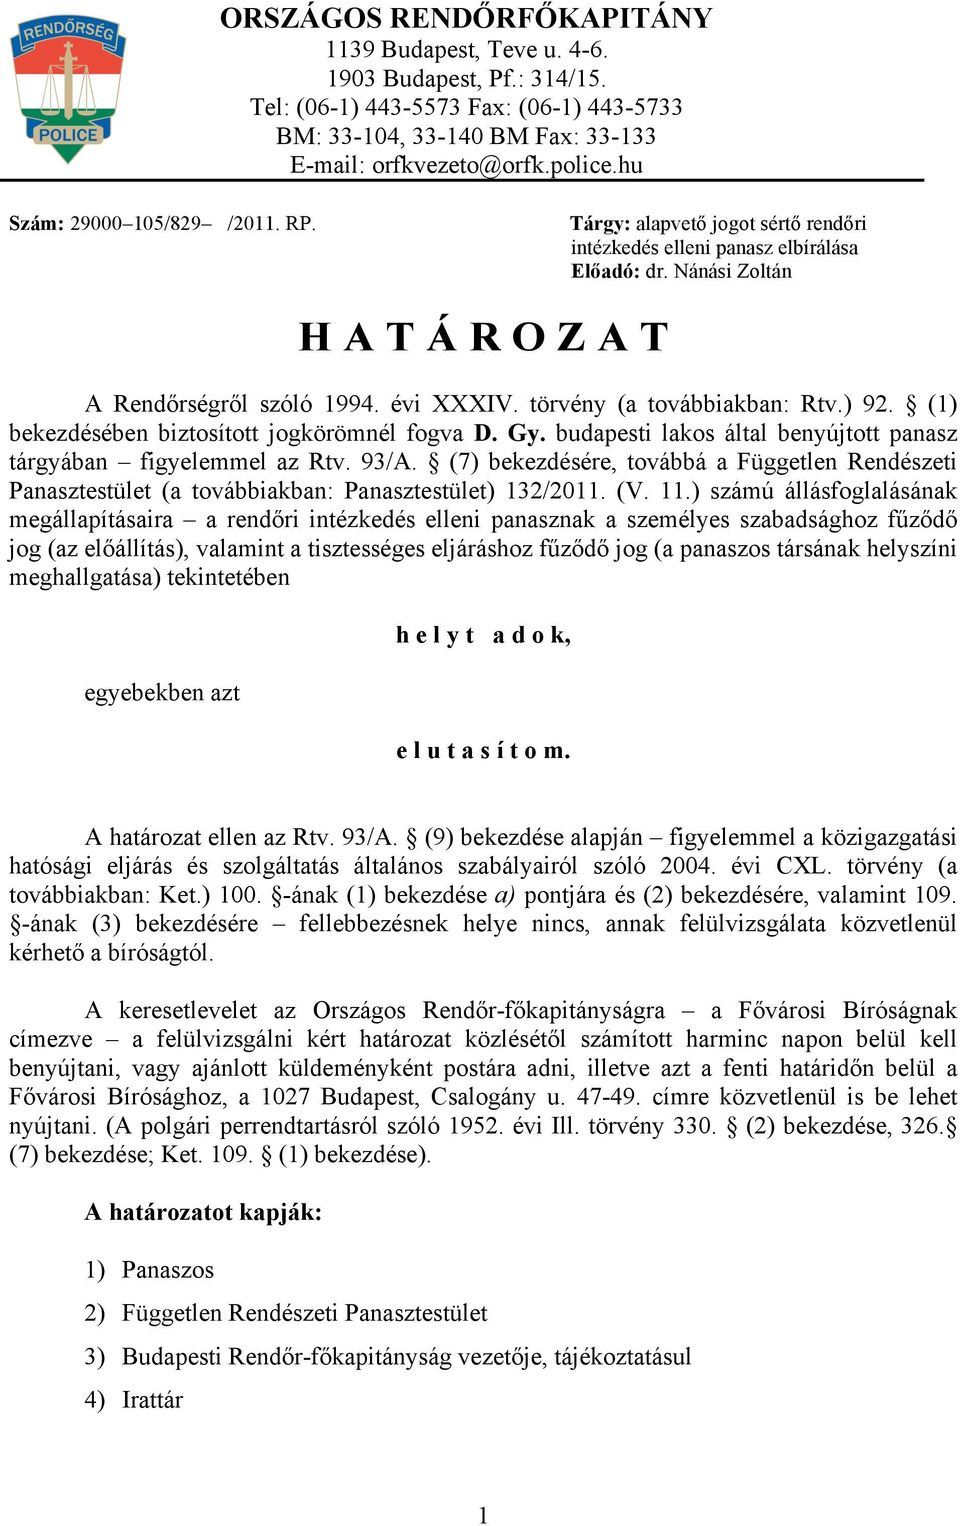 törvény (a továbbiakban: Rtv.) 92. (1) bekezdésében biztosított jogkörömnél fogva D. Gy. budapesti lakos által benyújtott panasz tárgyában figyelemmel az Rtv. 93/A.